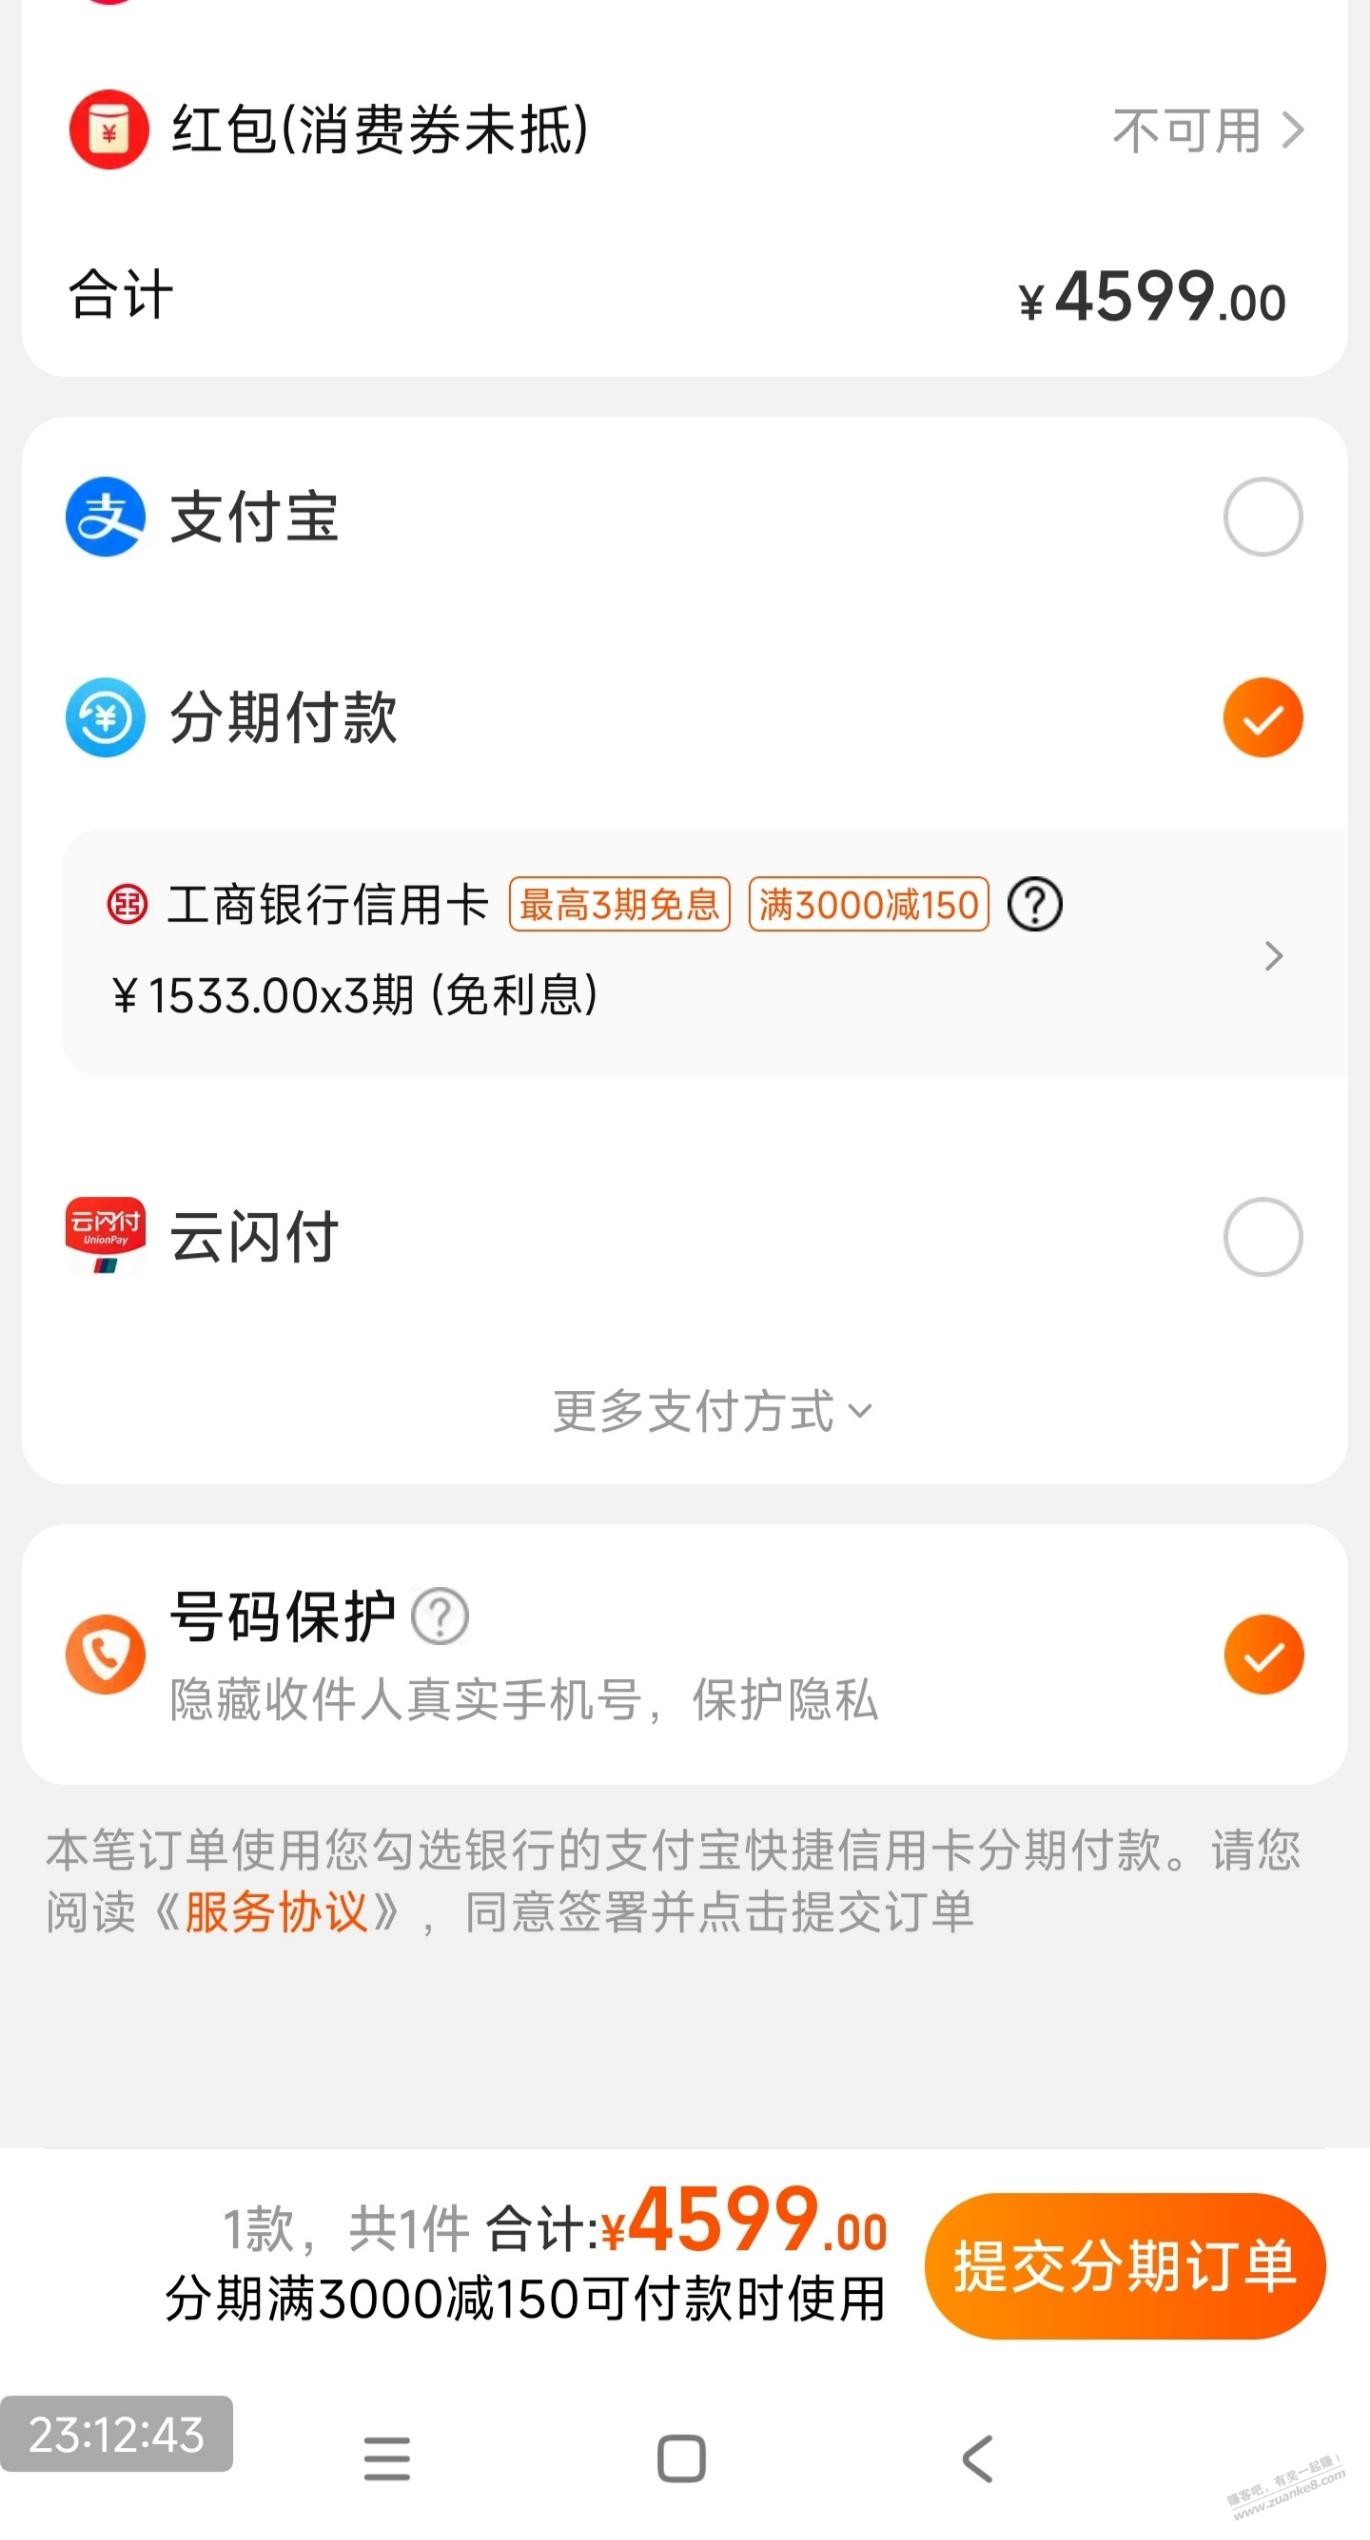 广东工行xing/用卡3000-150-惠小助(52huixz.com)